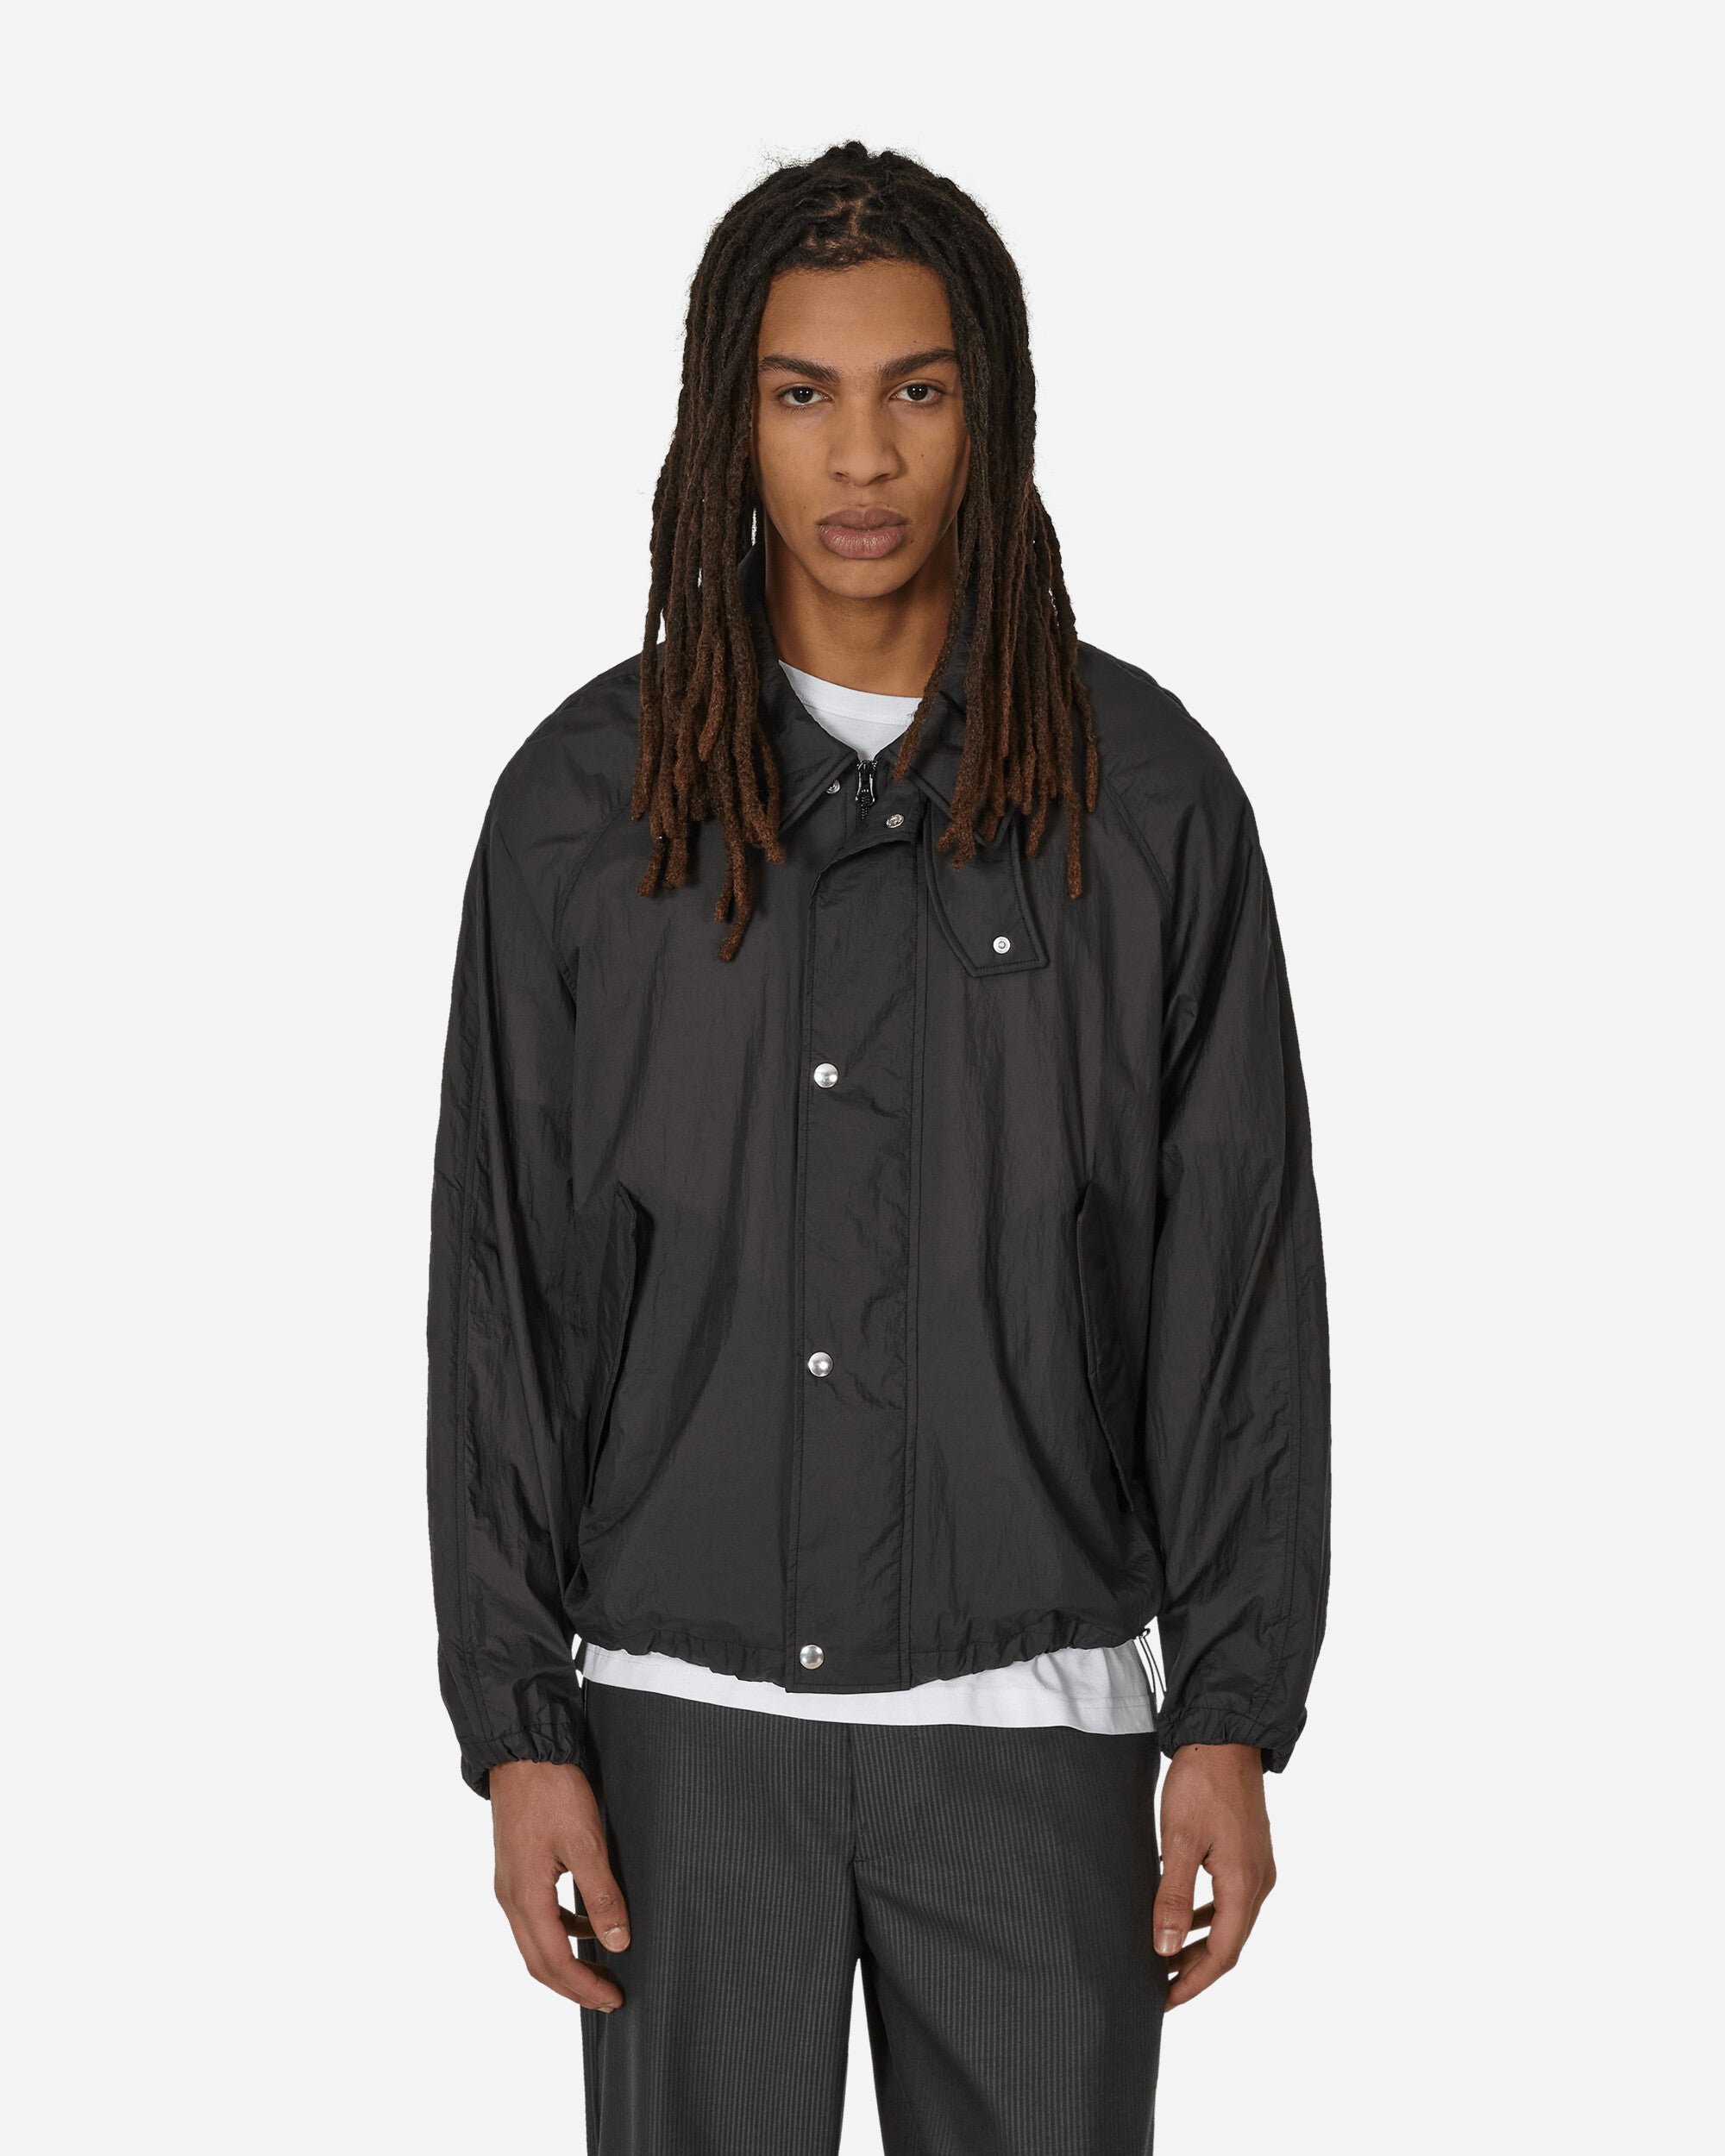 mfpen Provenance Jacket Black Coats and Jackets Jackets M124-53 1